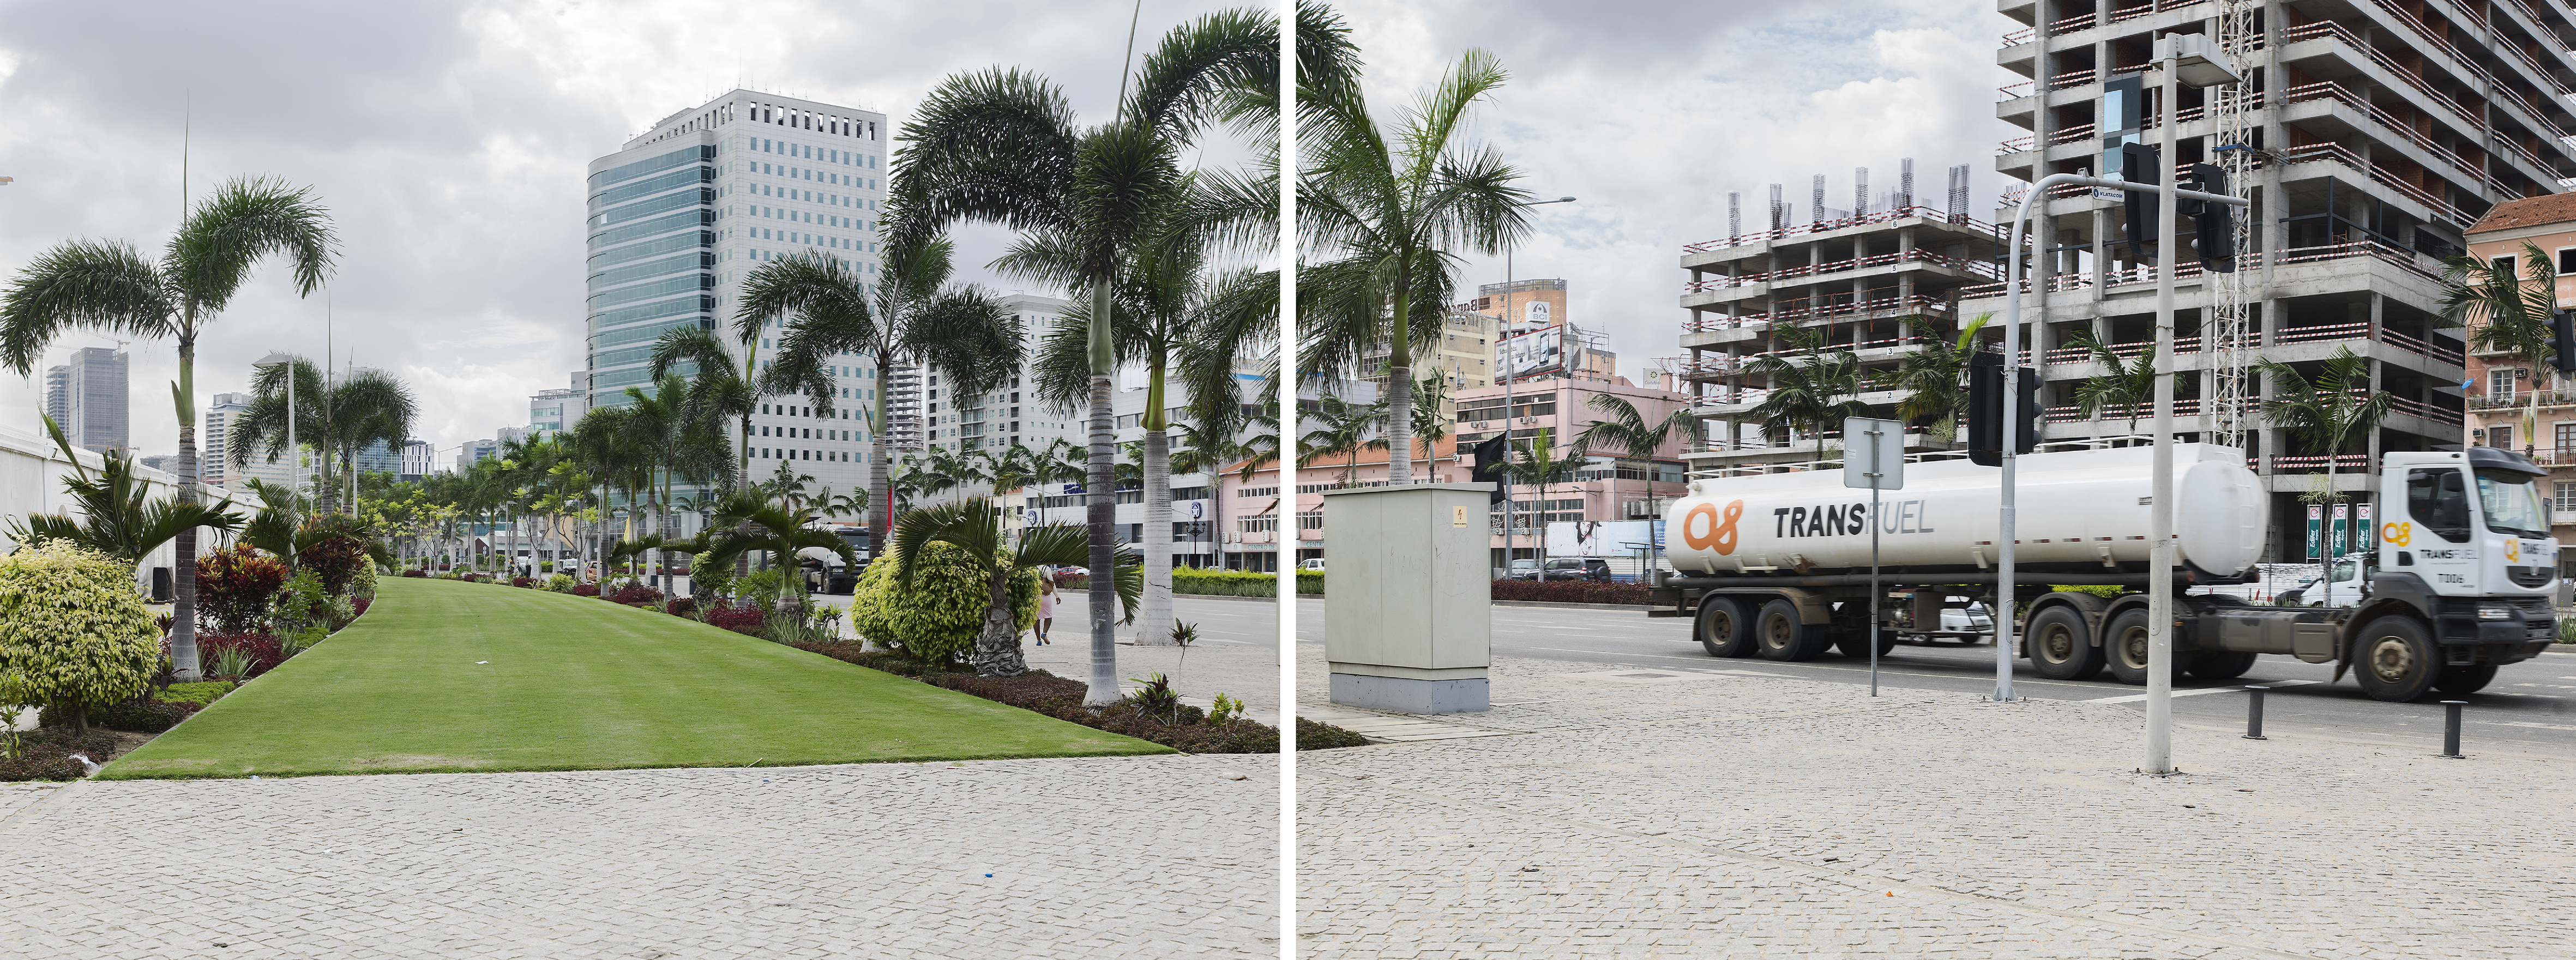  - Avenida 4 de Fevereiro, Luanda, Angola, 2016, 